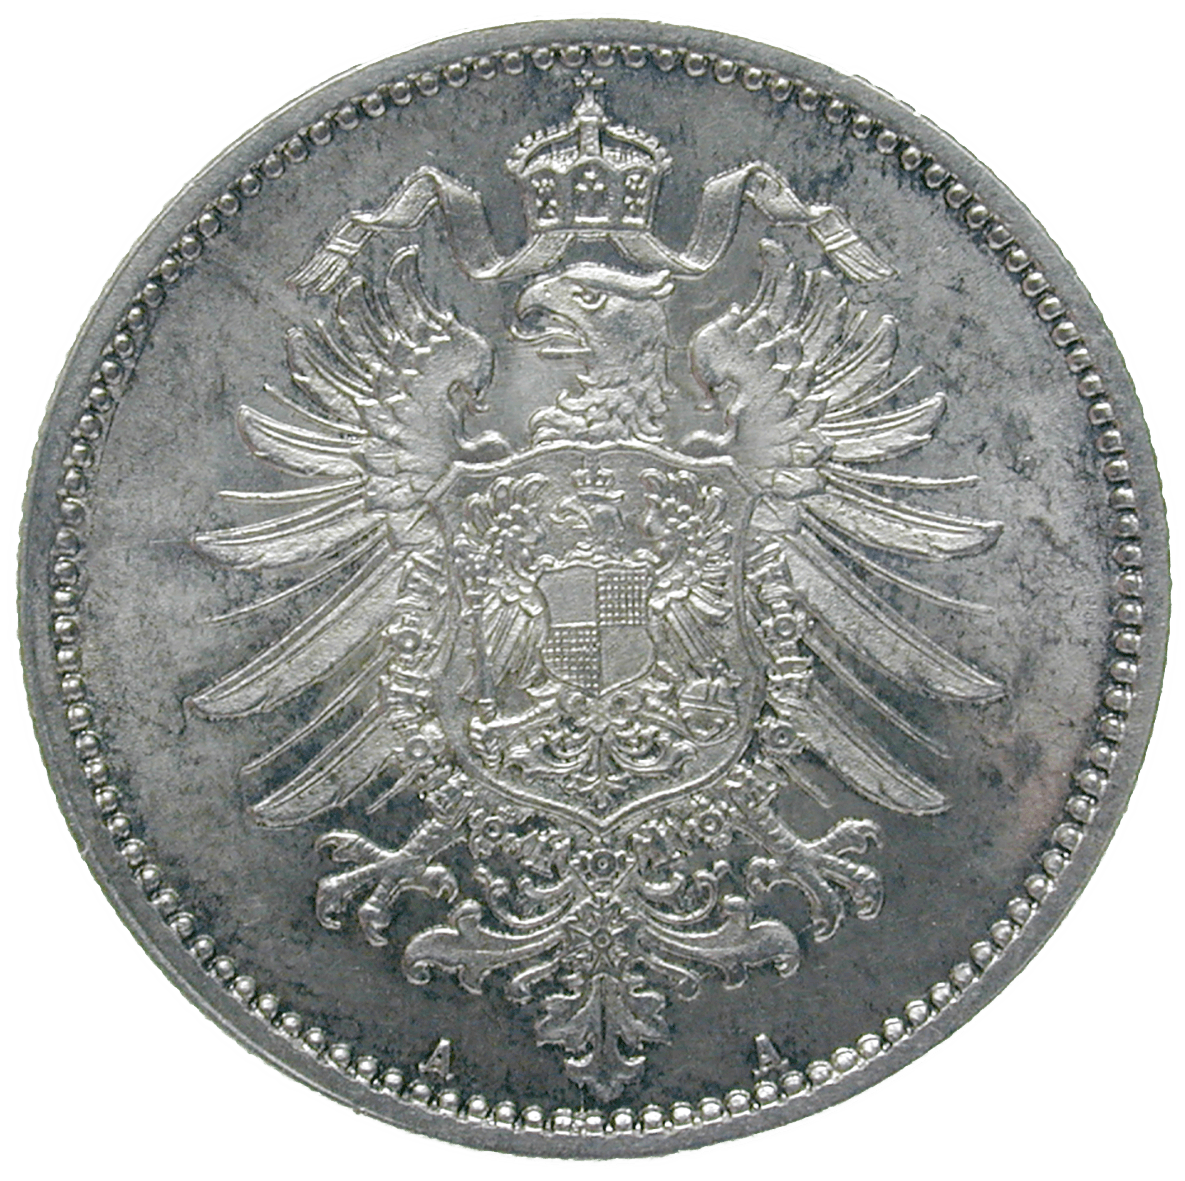 Deutsches Kaiserreich, Wilhelm I., 1 Mark 1873 (reverse)